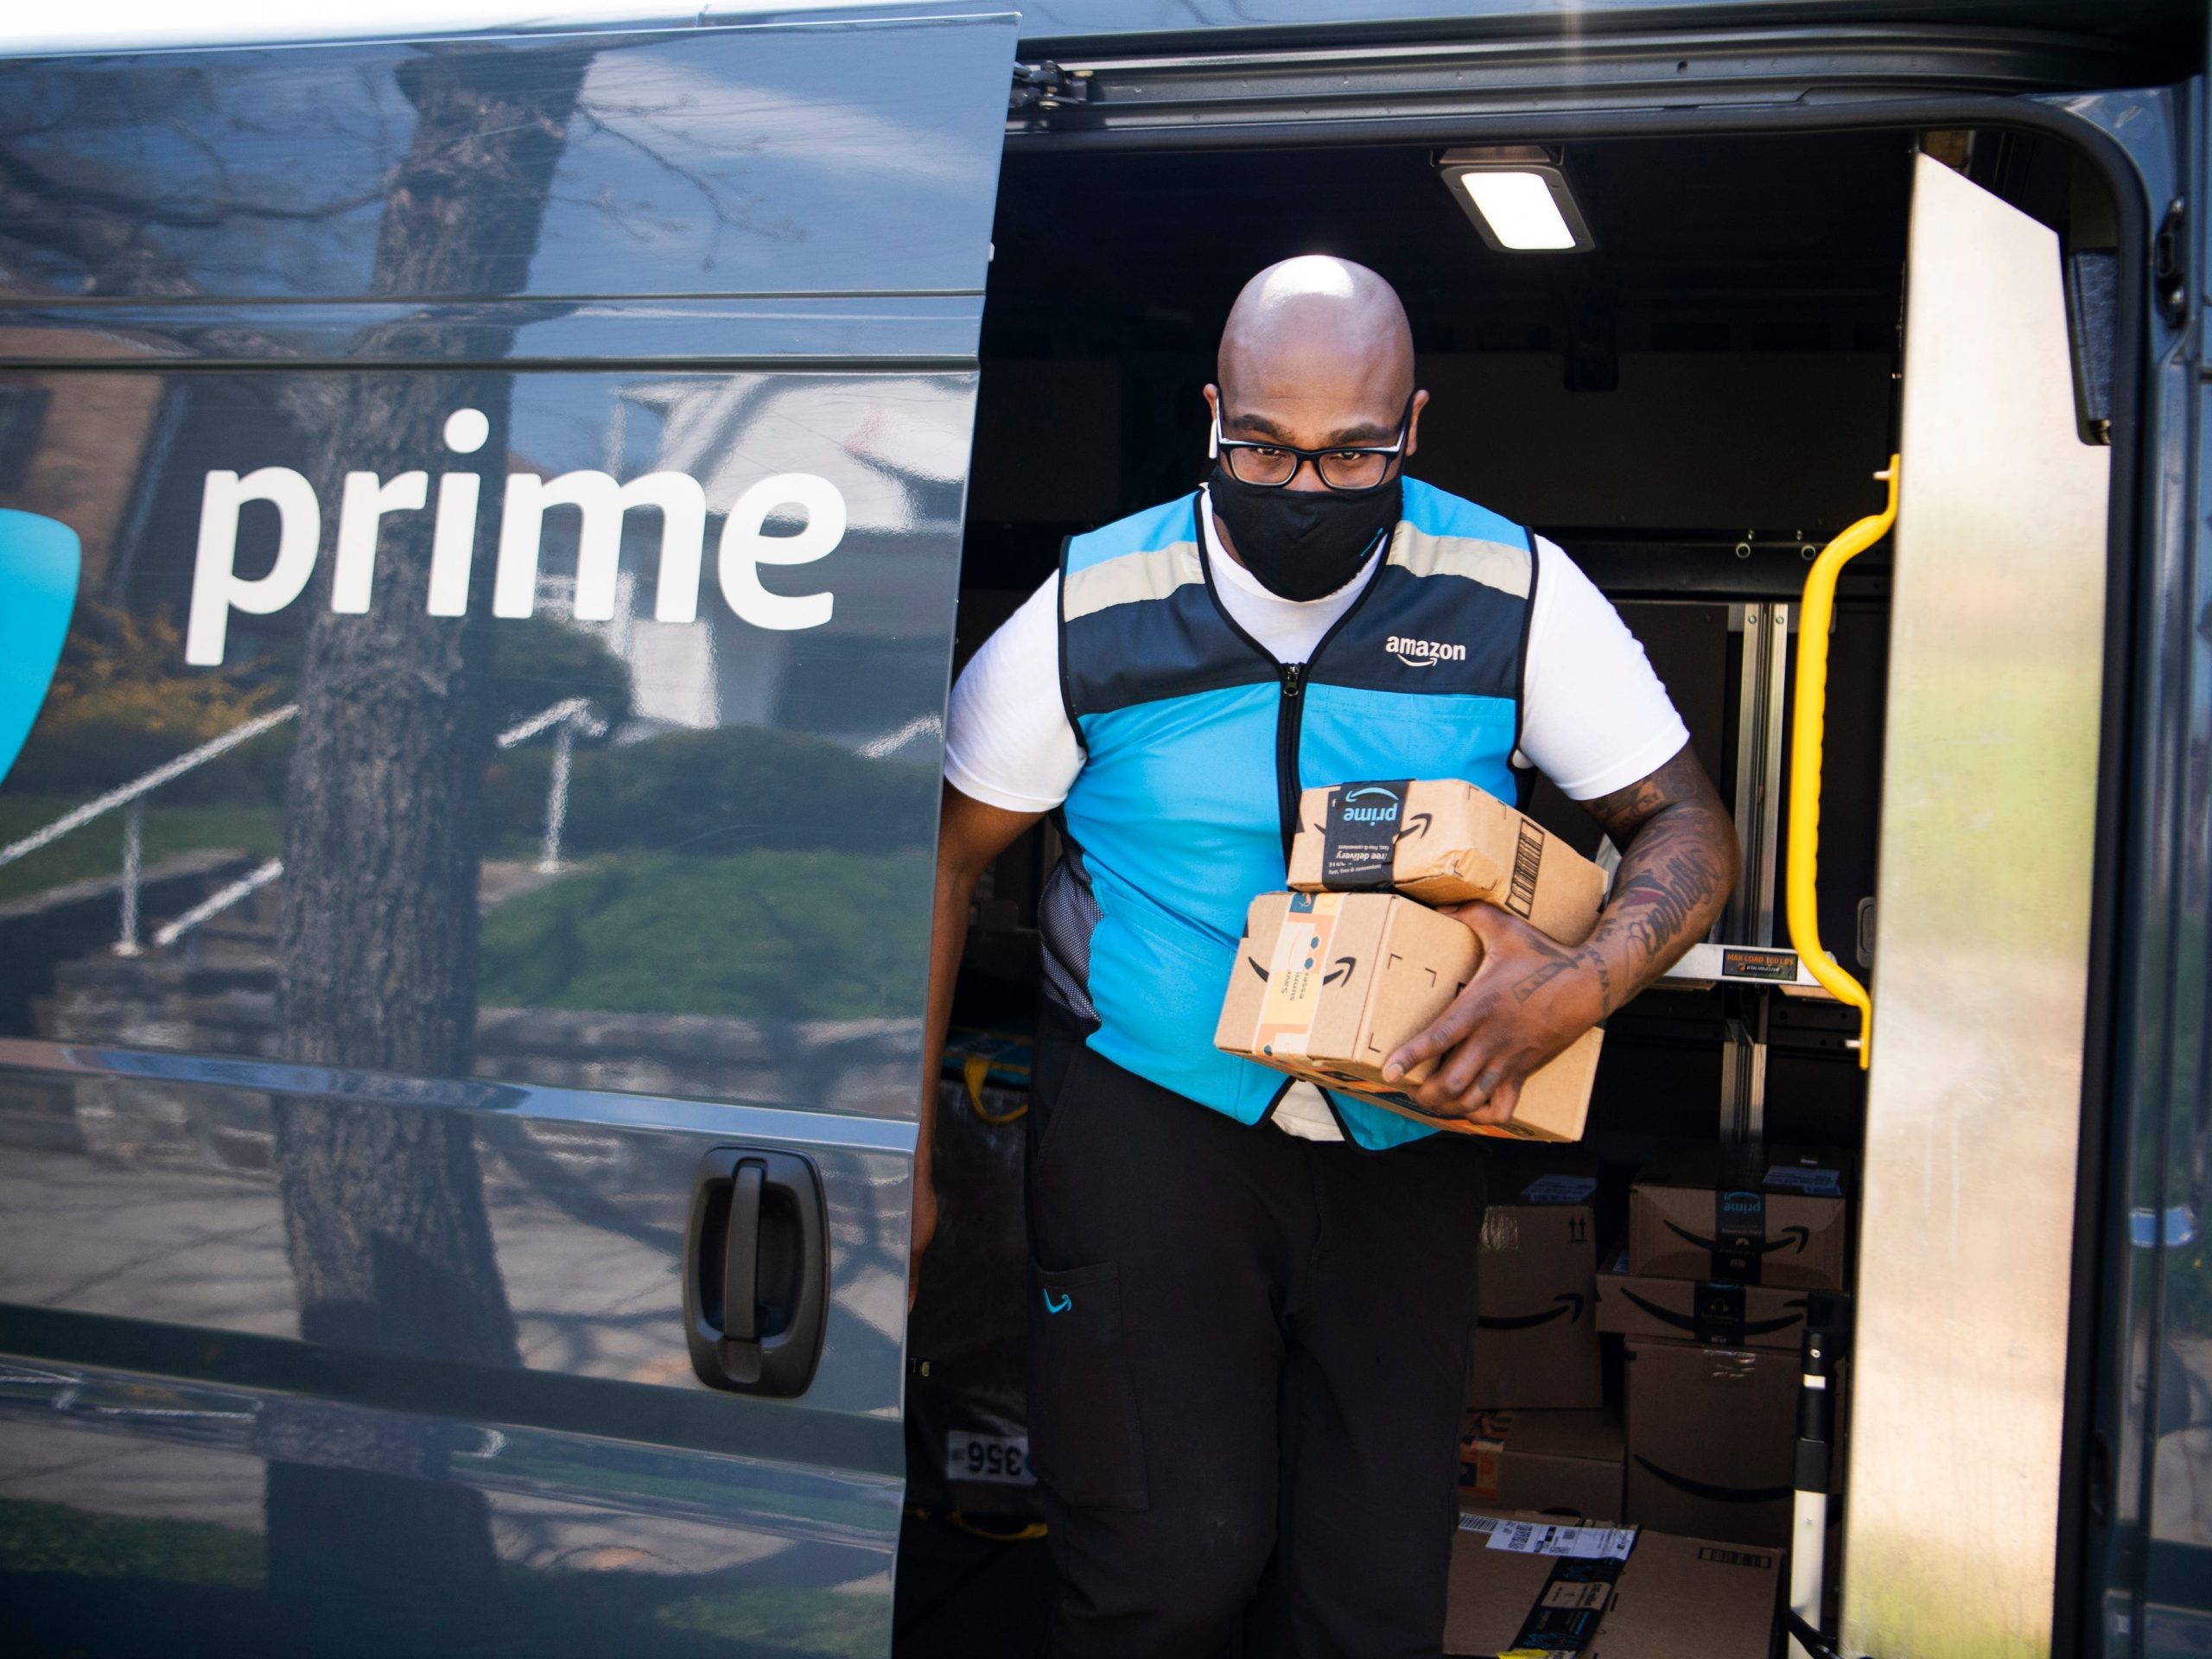 Amazon prime delivery stock